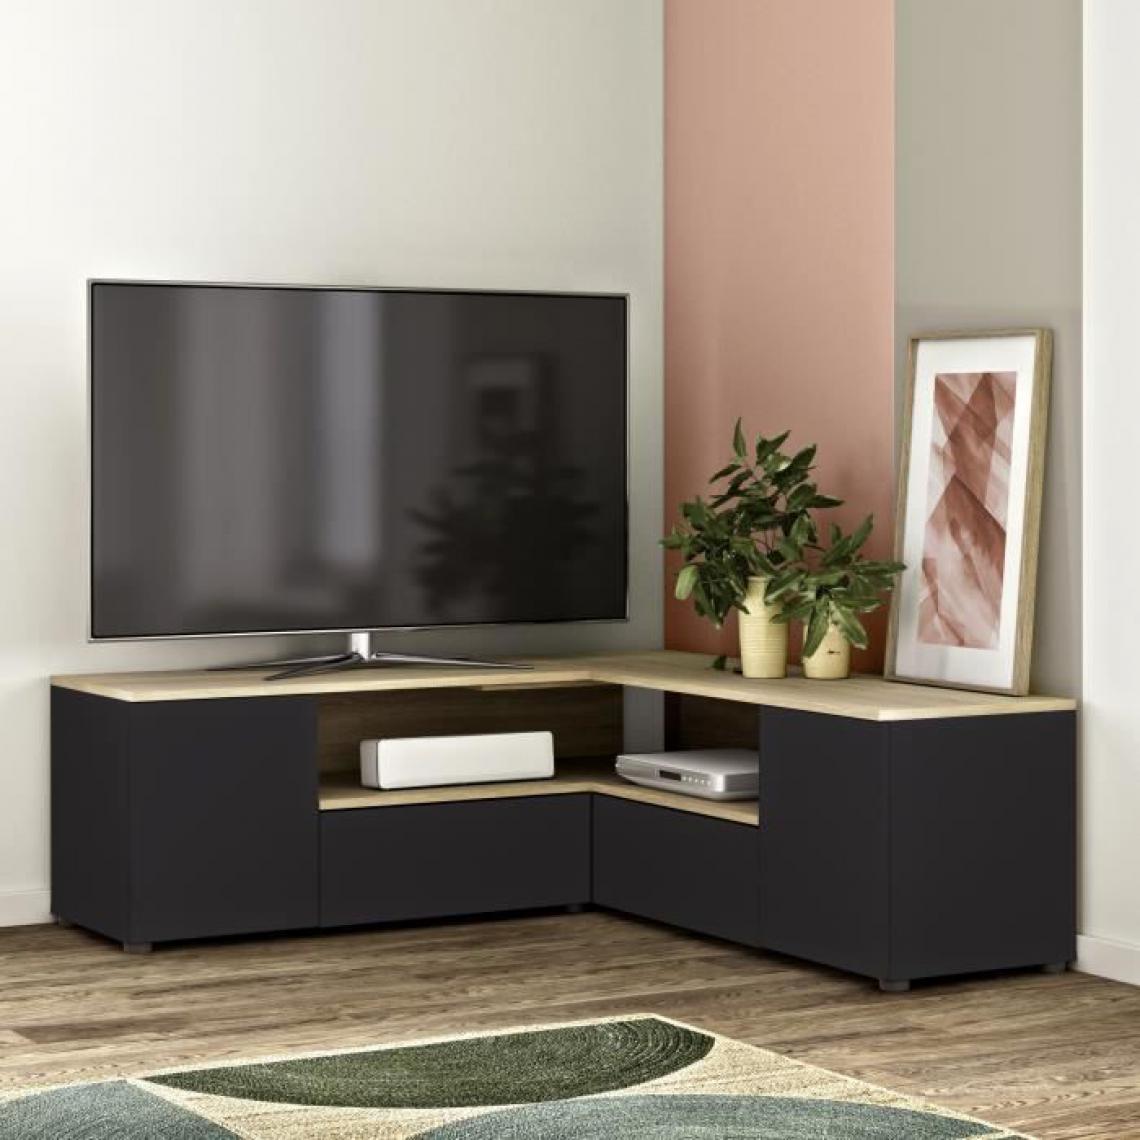 Temahome - SYMBIOSYS Meuble TV d'angle 4 portes - Décor chêne et noir - L 130 x P 130 x H 46 cm - Meubles TV, Hi-Fi